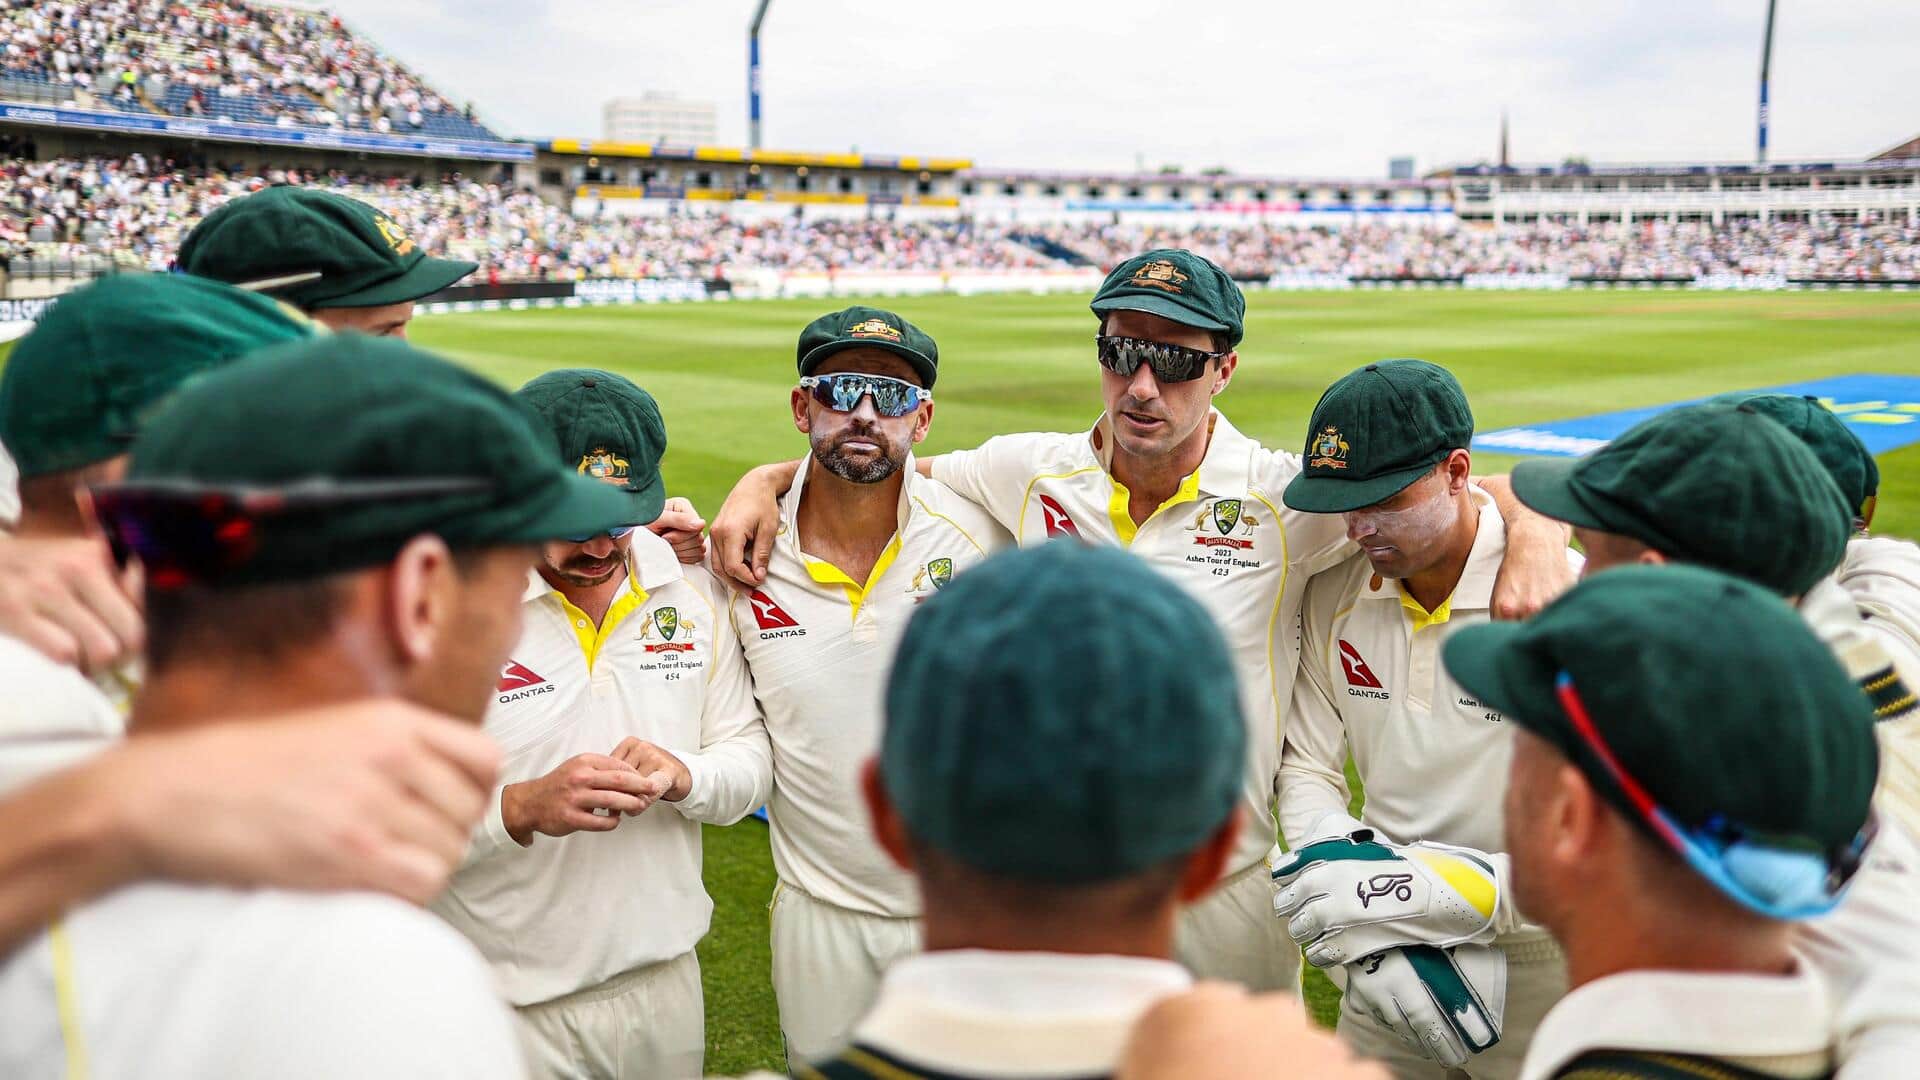 दूसरा एशेज टेस्ट: ऑस्ट्रेलिया के खिलाफ इंग्लैंड ने टॉस जीतकर चुनी गेंदबाजी, जानिए प्लेइंग इलेवन 